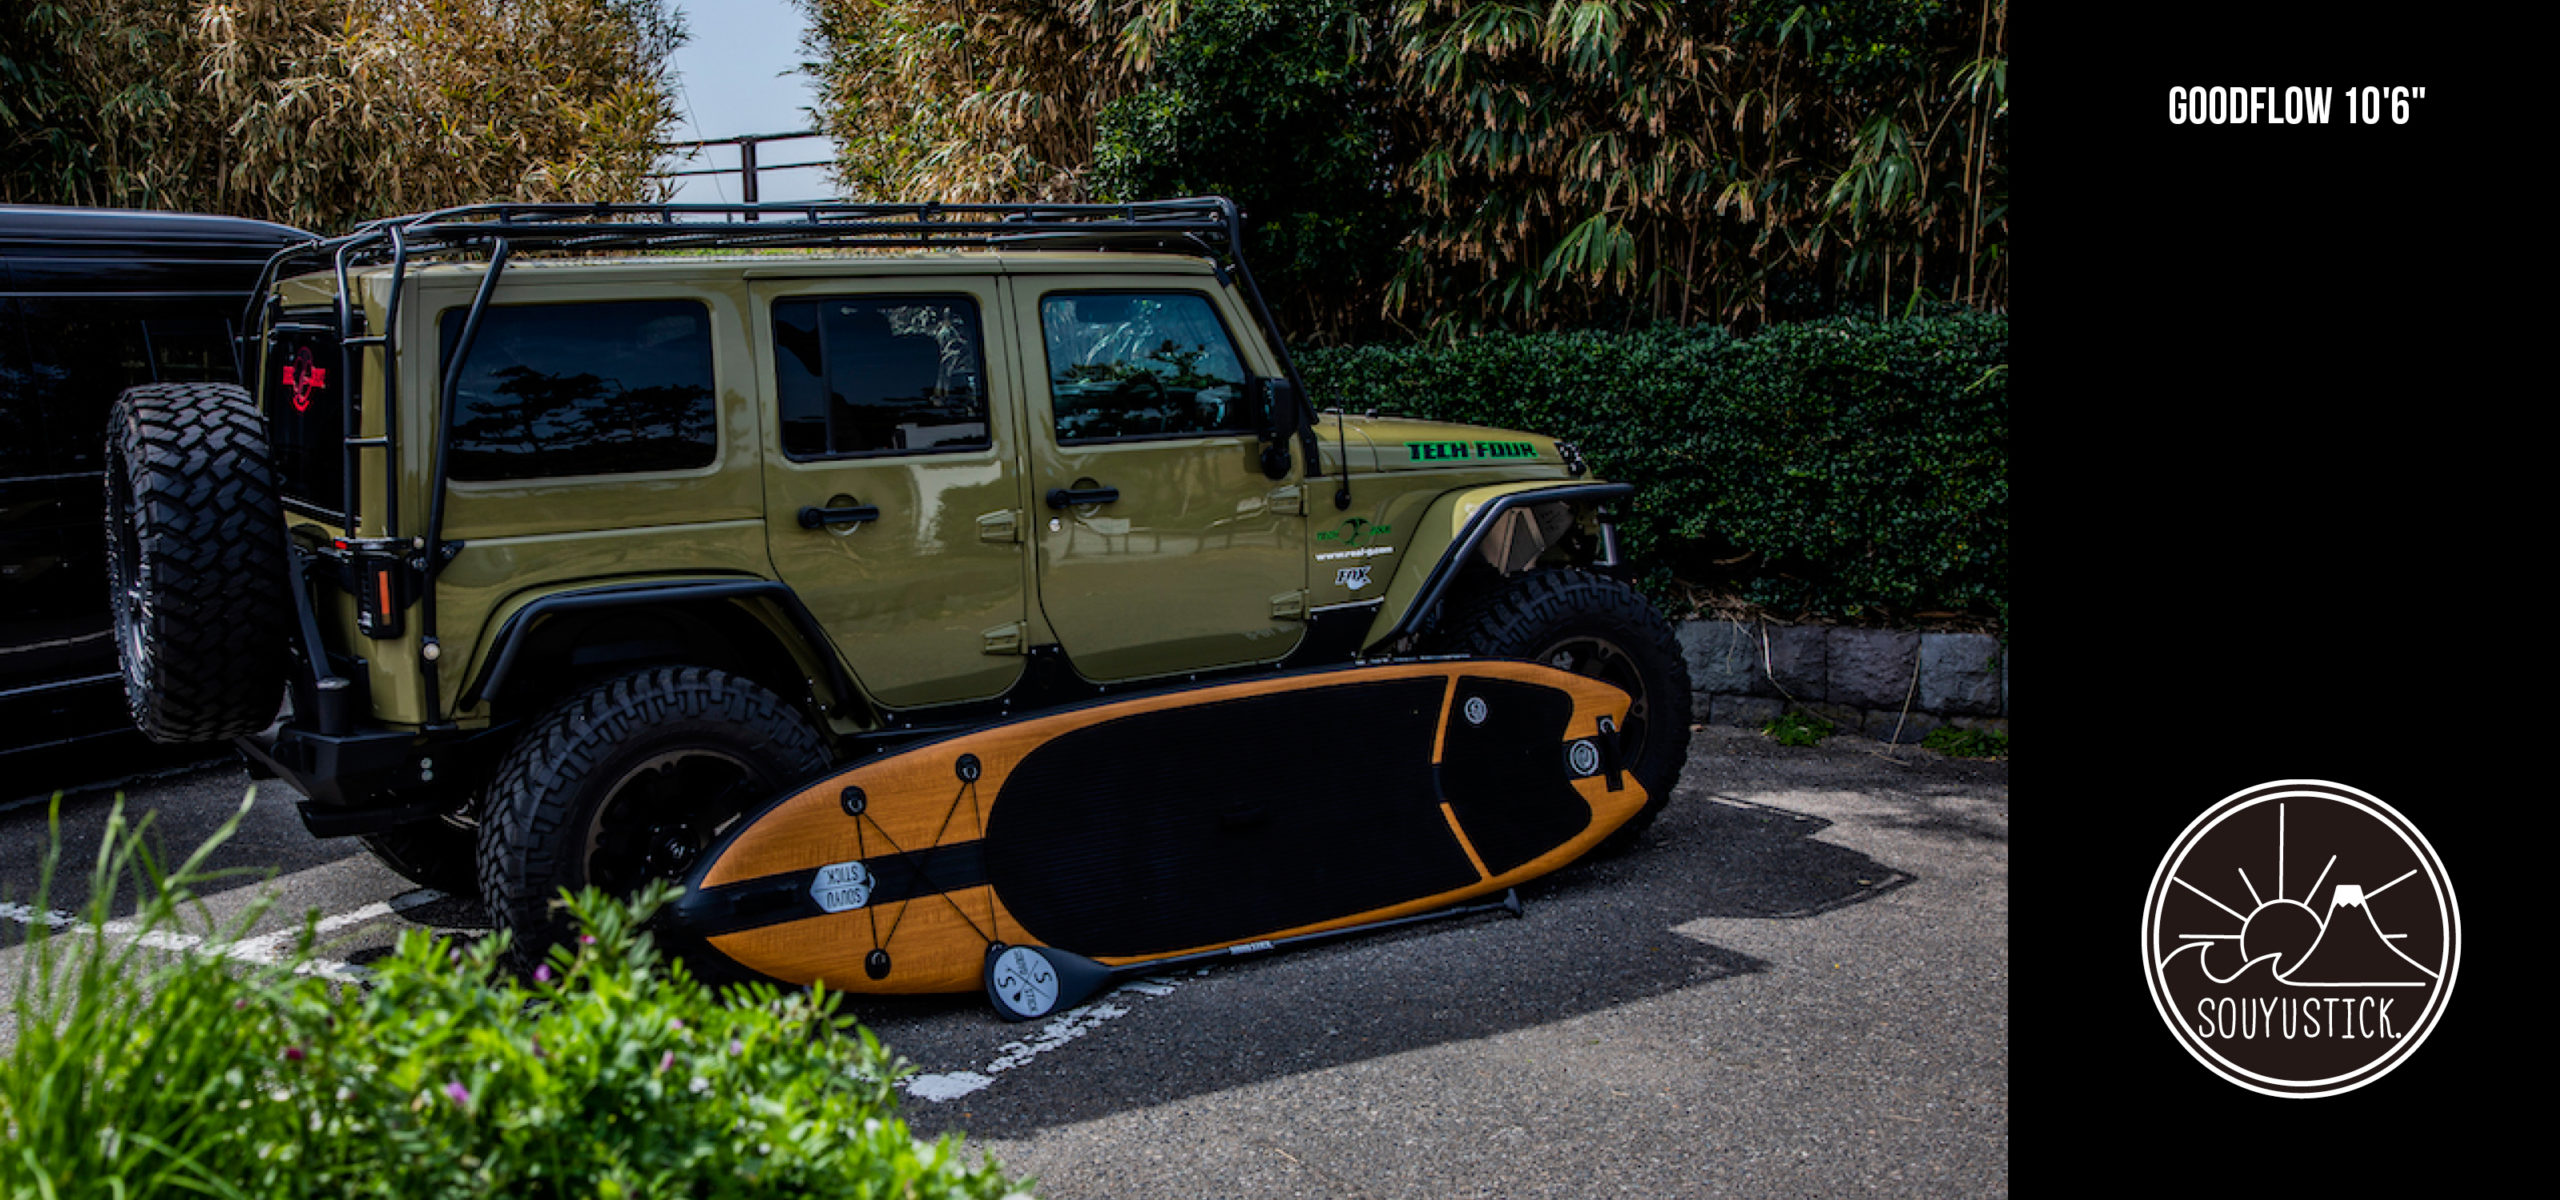 souyu stick. – Inflatable SUP for OUTDOOR. アウトドアを楽しむためのインフレータブルSUPブランドです。